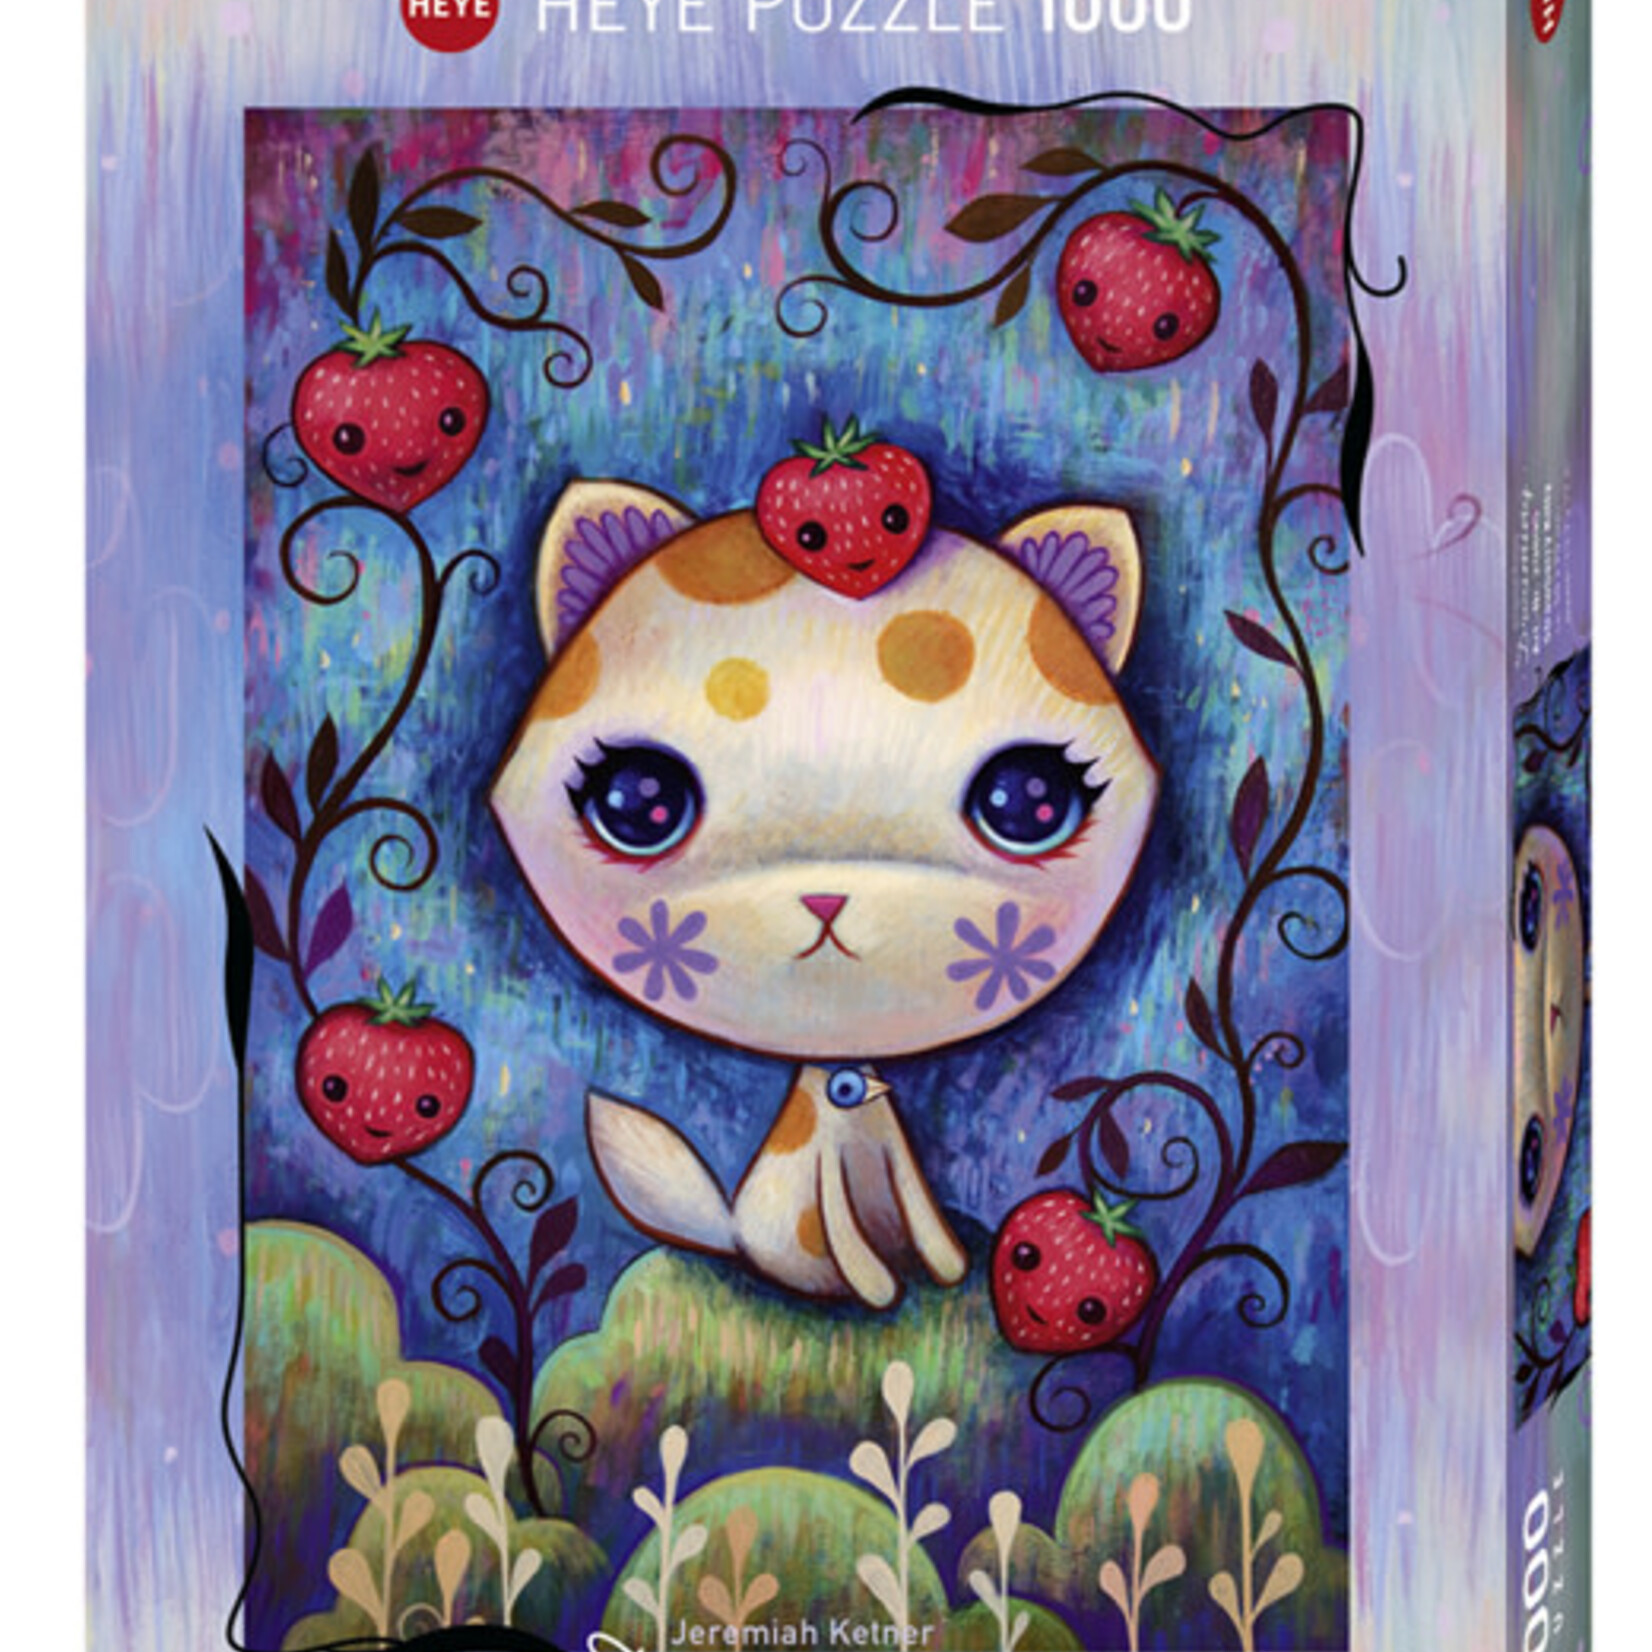 Heye Heye 1000 - Dreaming - Strawberry Kitty